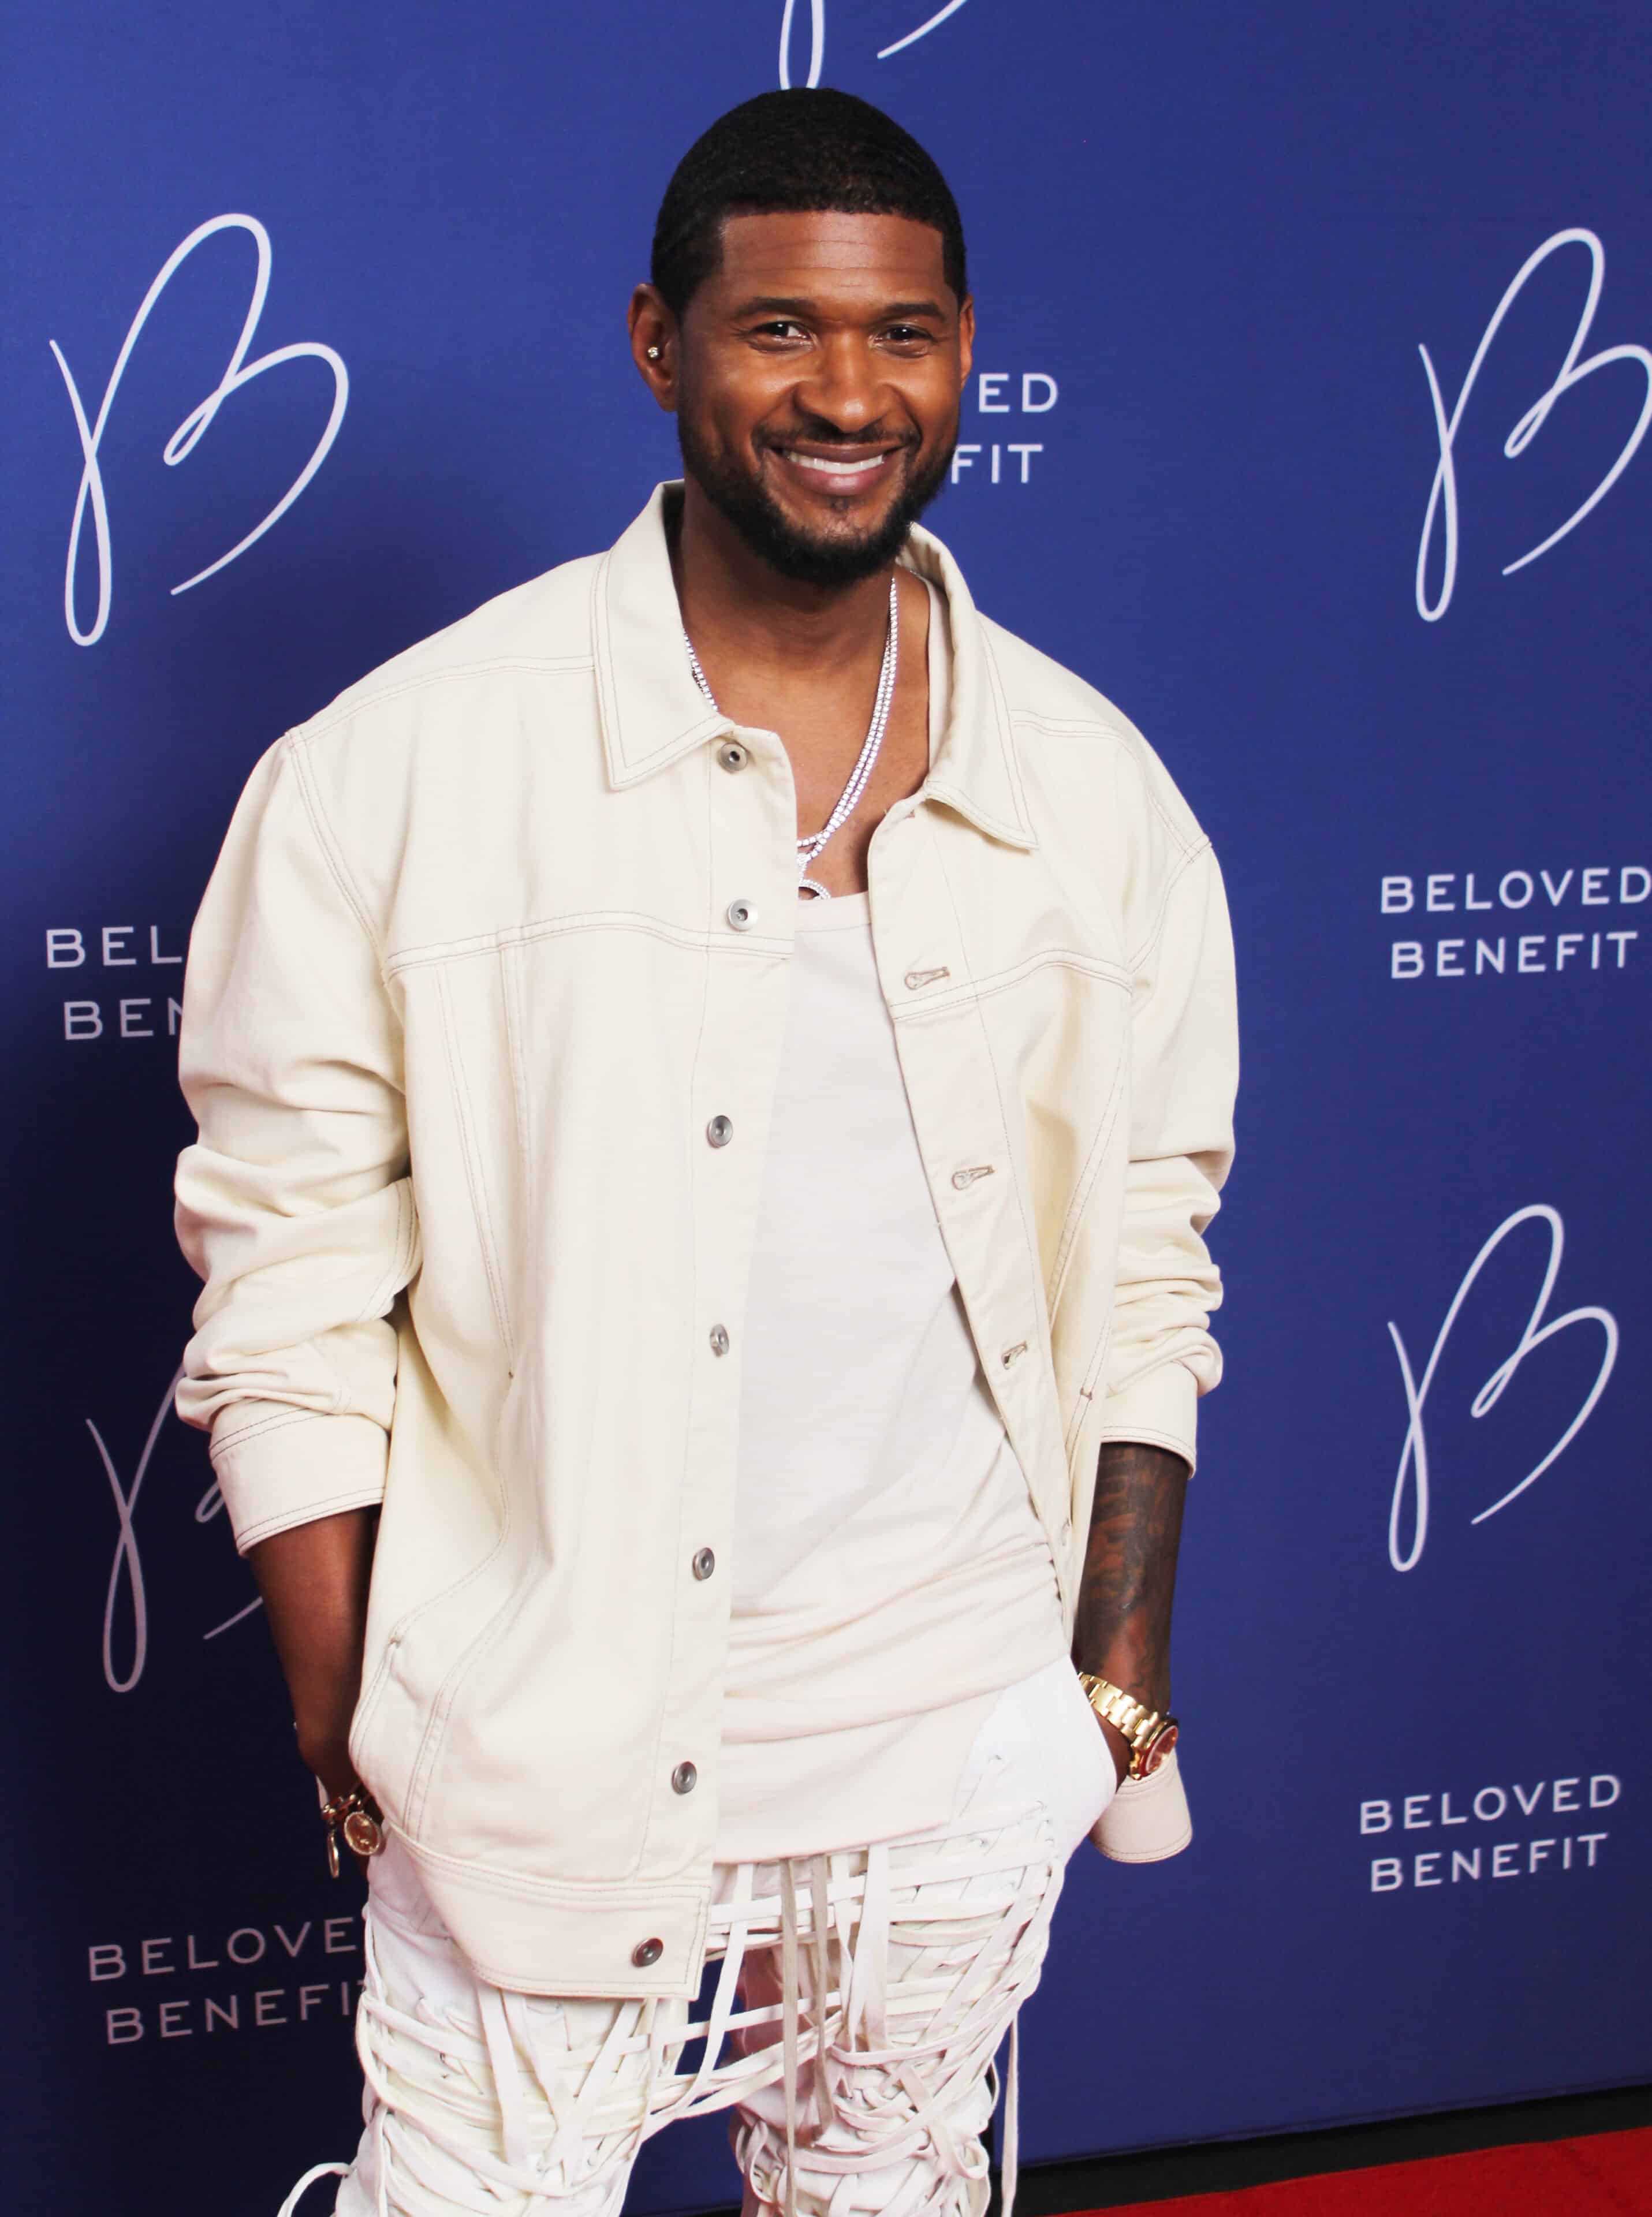 Usher at Beloved Benefit - Credit Ivan Thomas